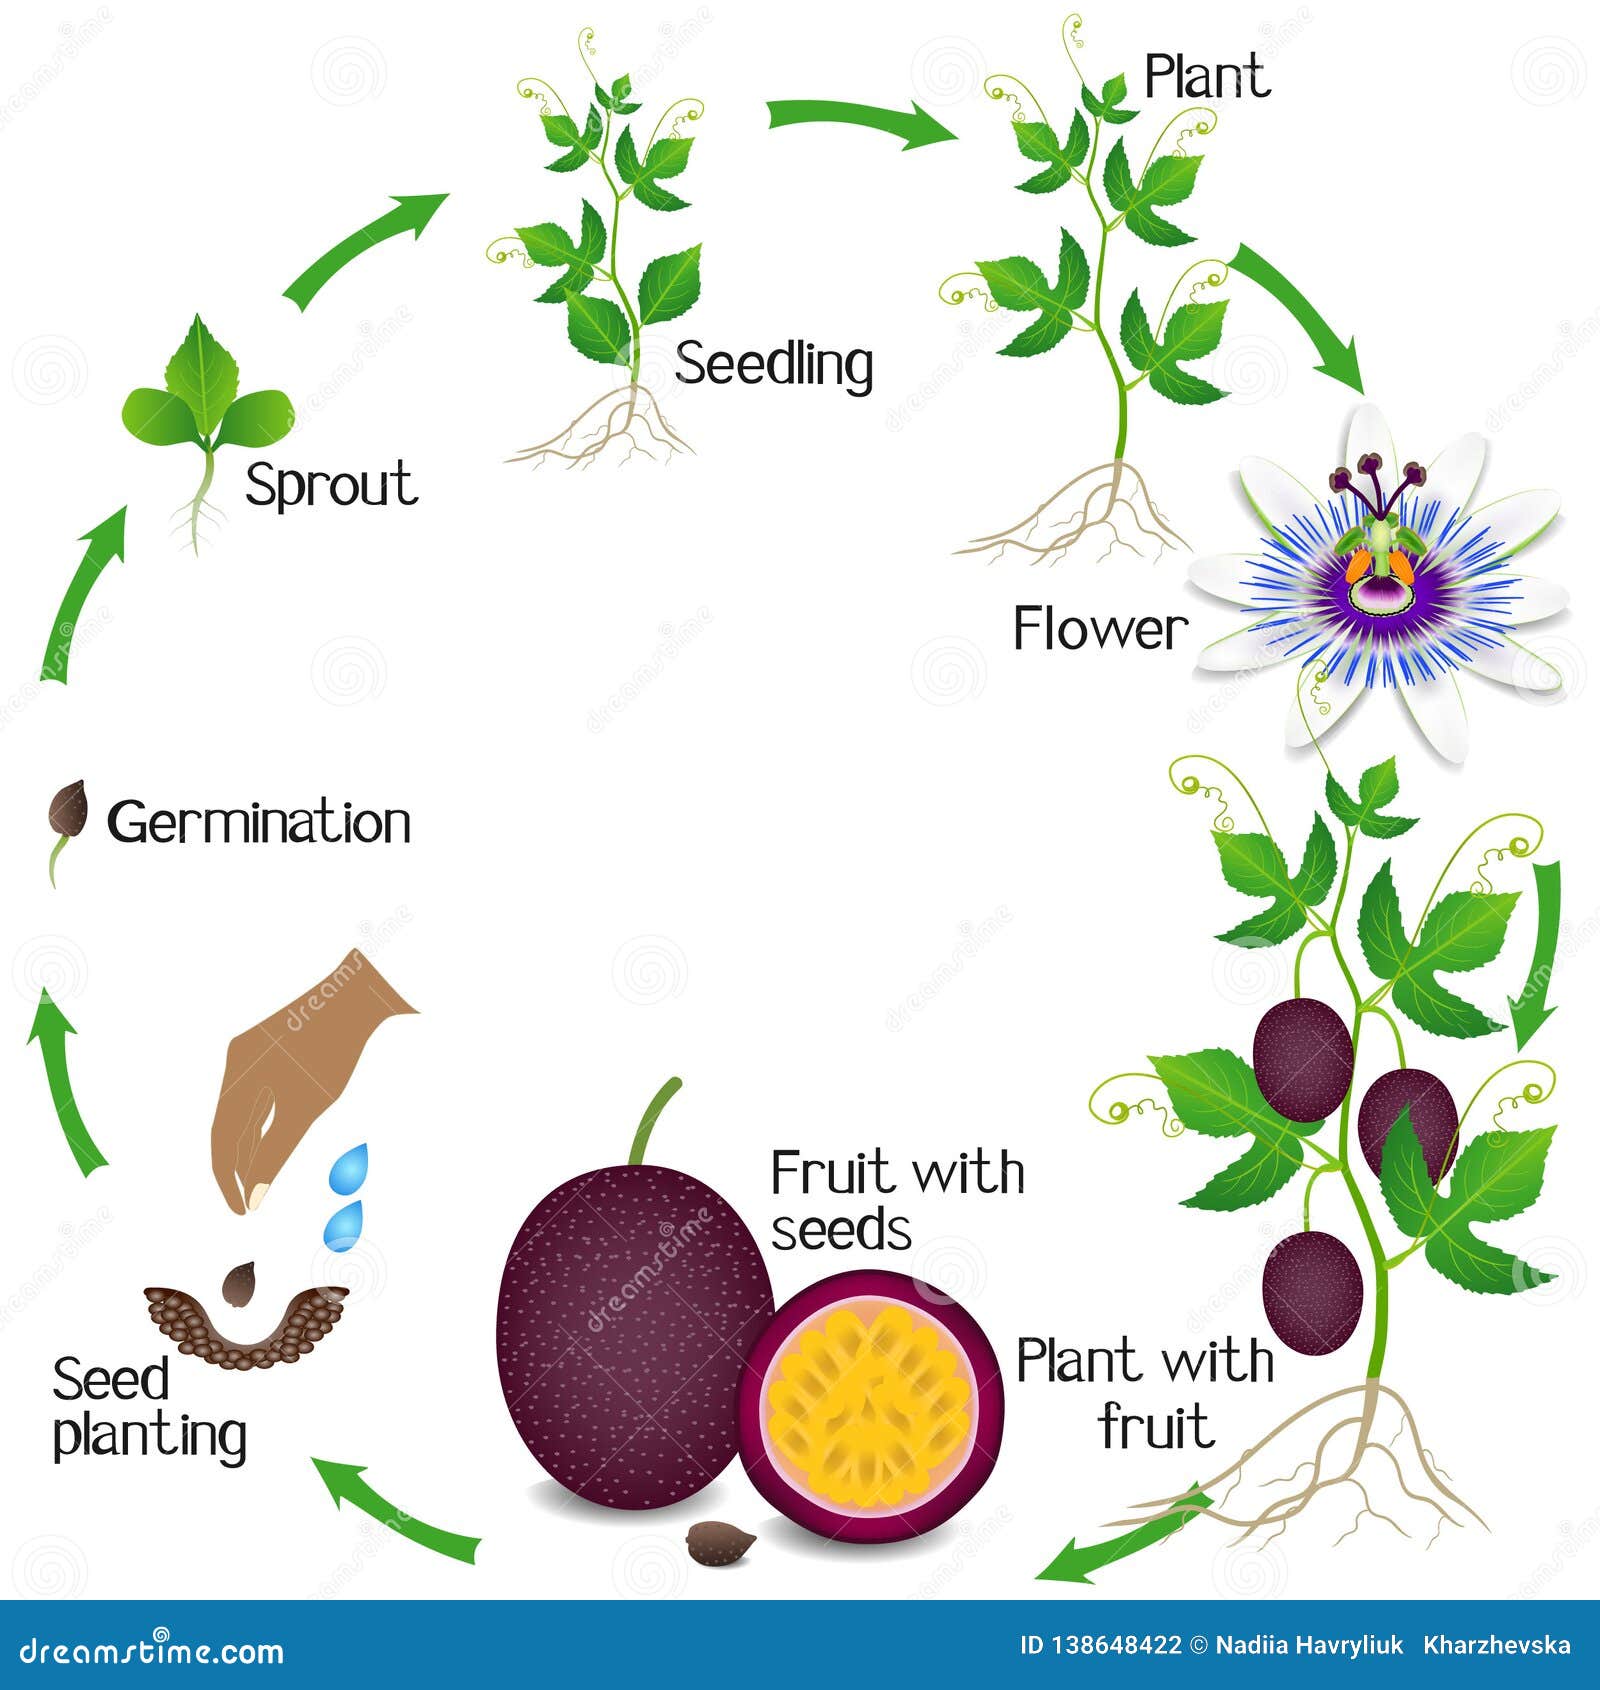 Жизненный цикл овощных растений по маркову